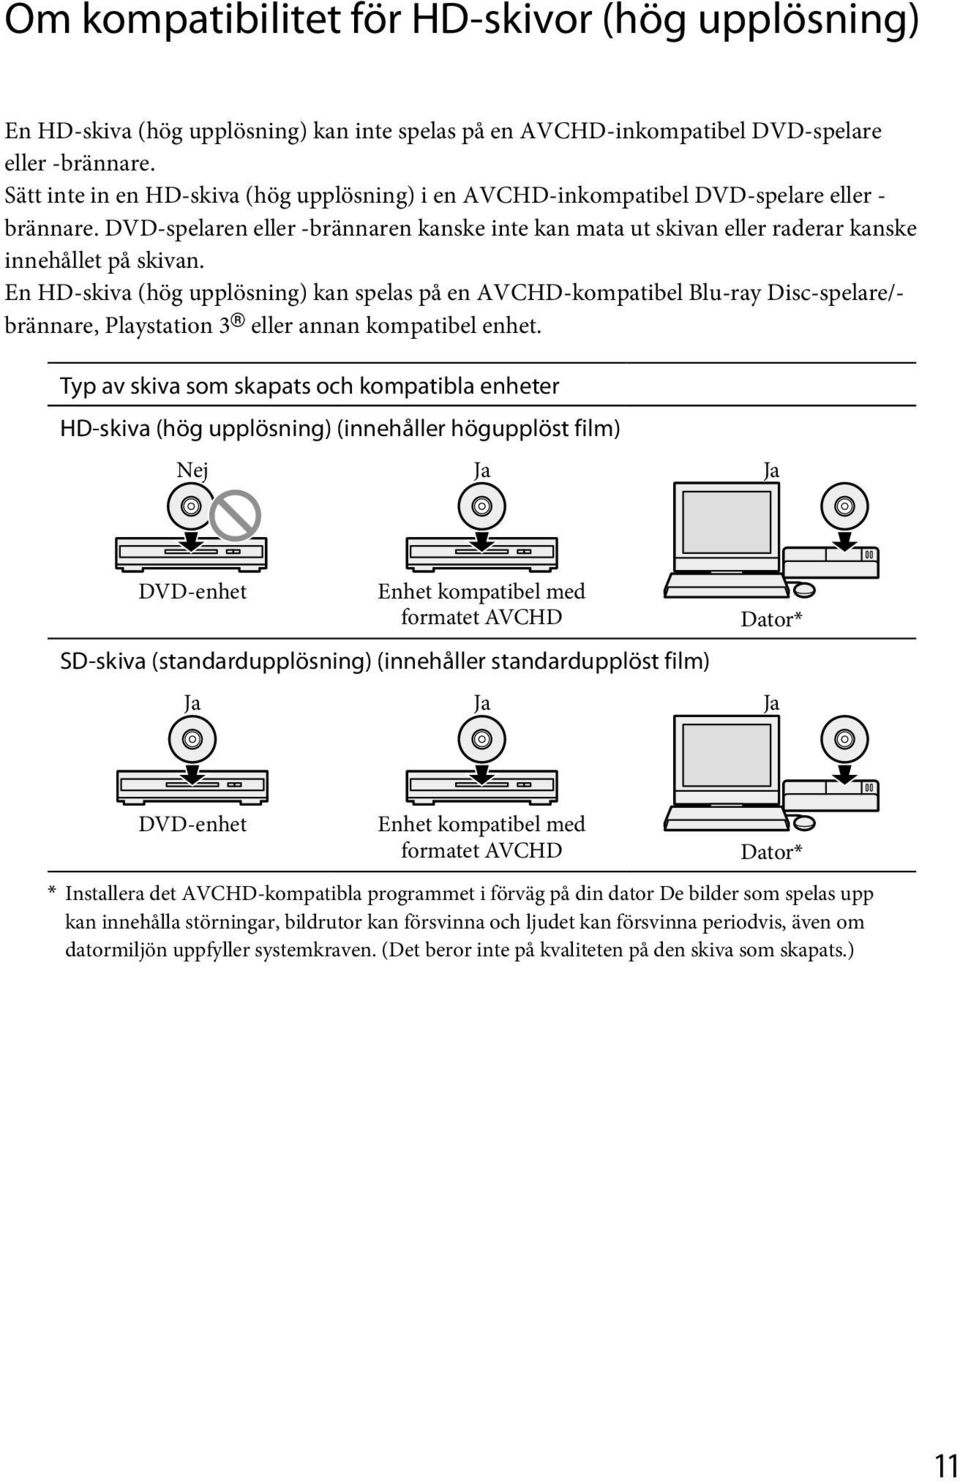 En HD-skiva (hög upplösning) kan spelas på en AVCHD-kompatibel Blu-ray Disc-spelare/- brännare, Playstation 3 eller annan kompatibel enhet.